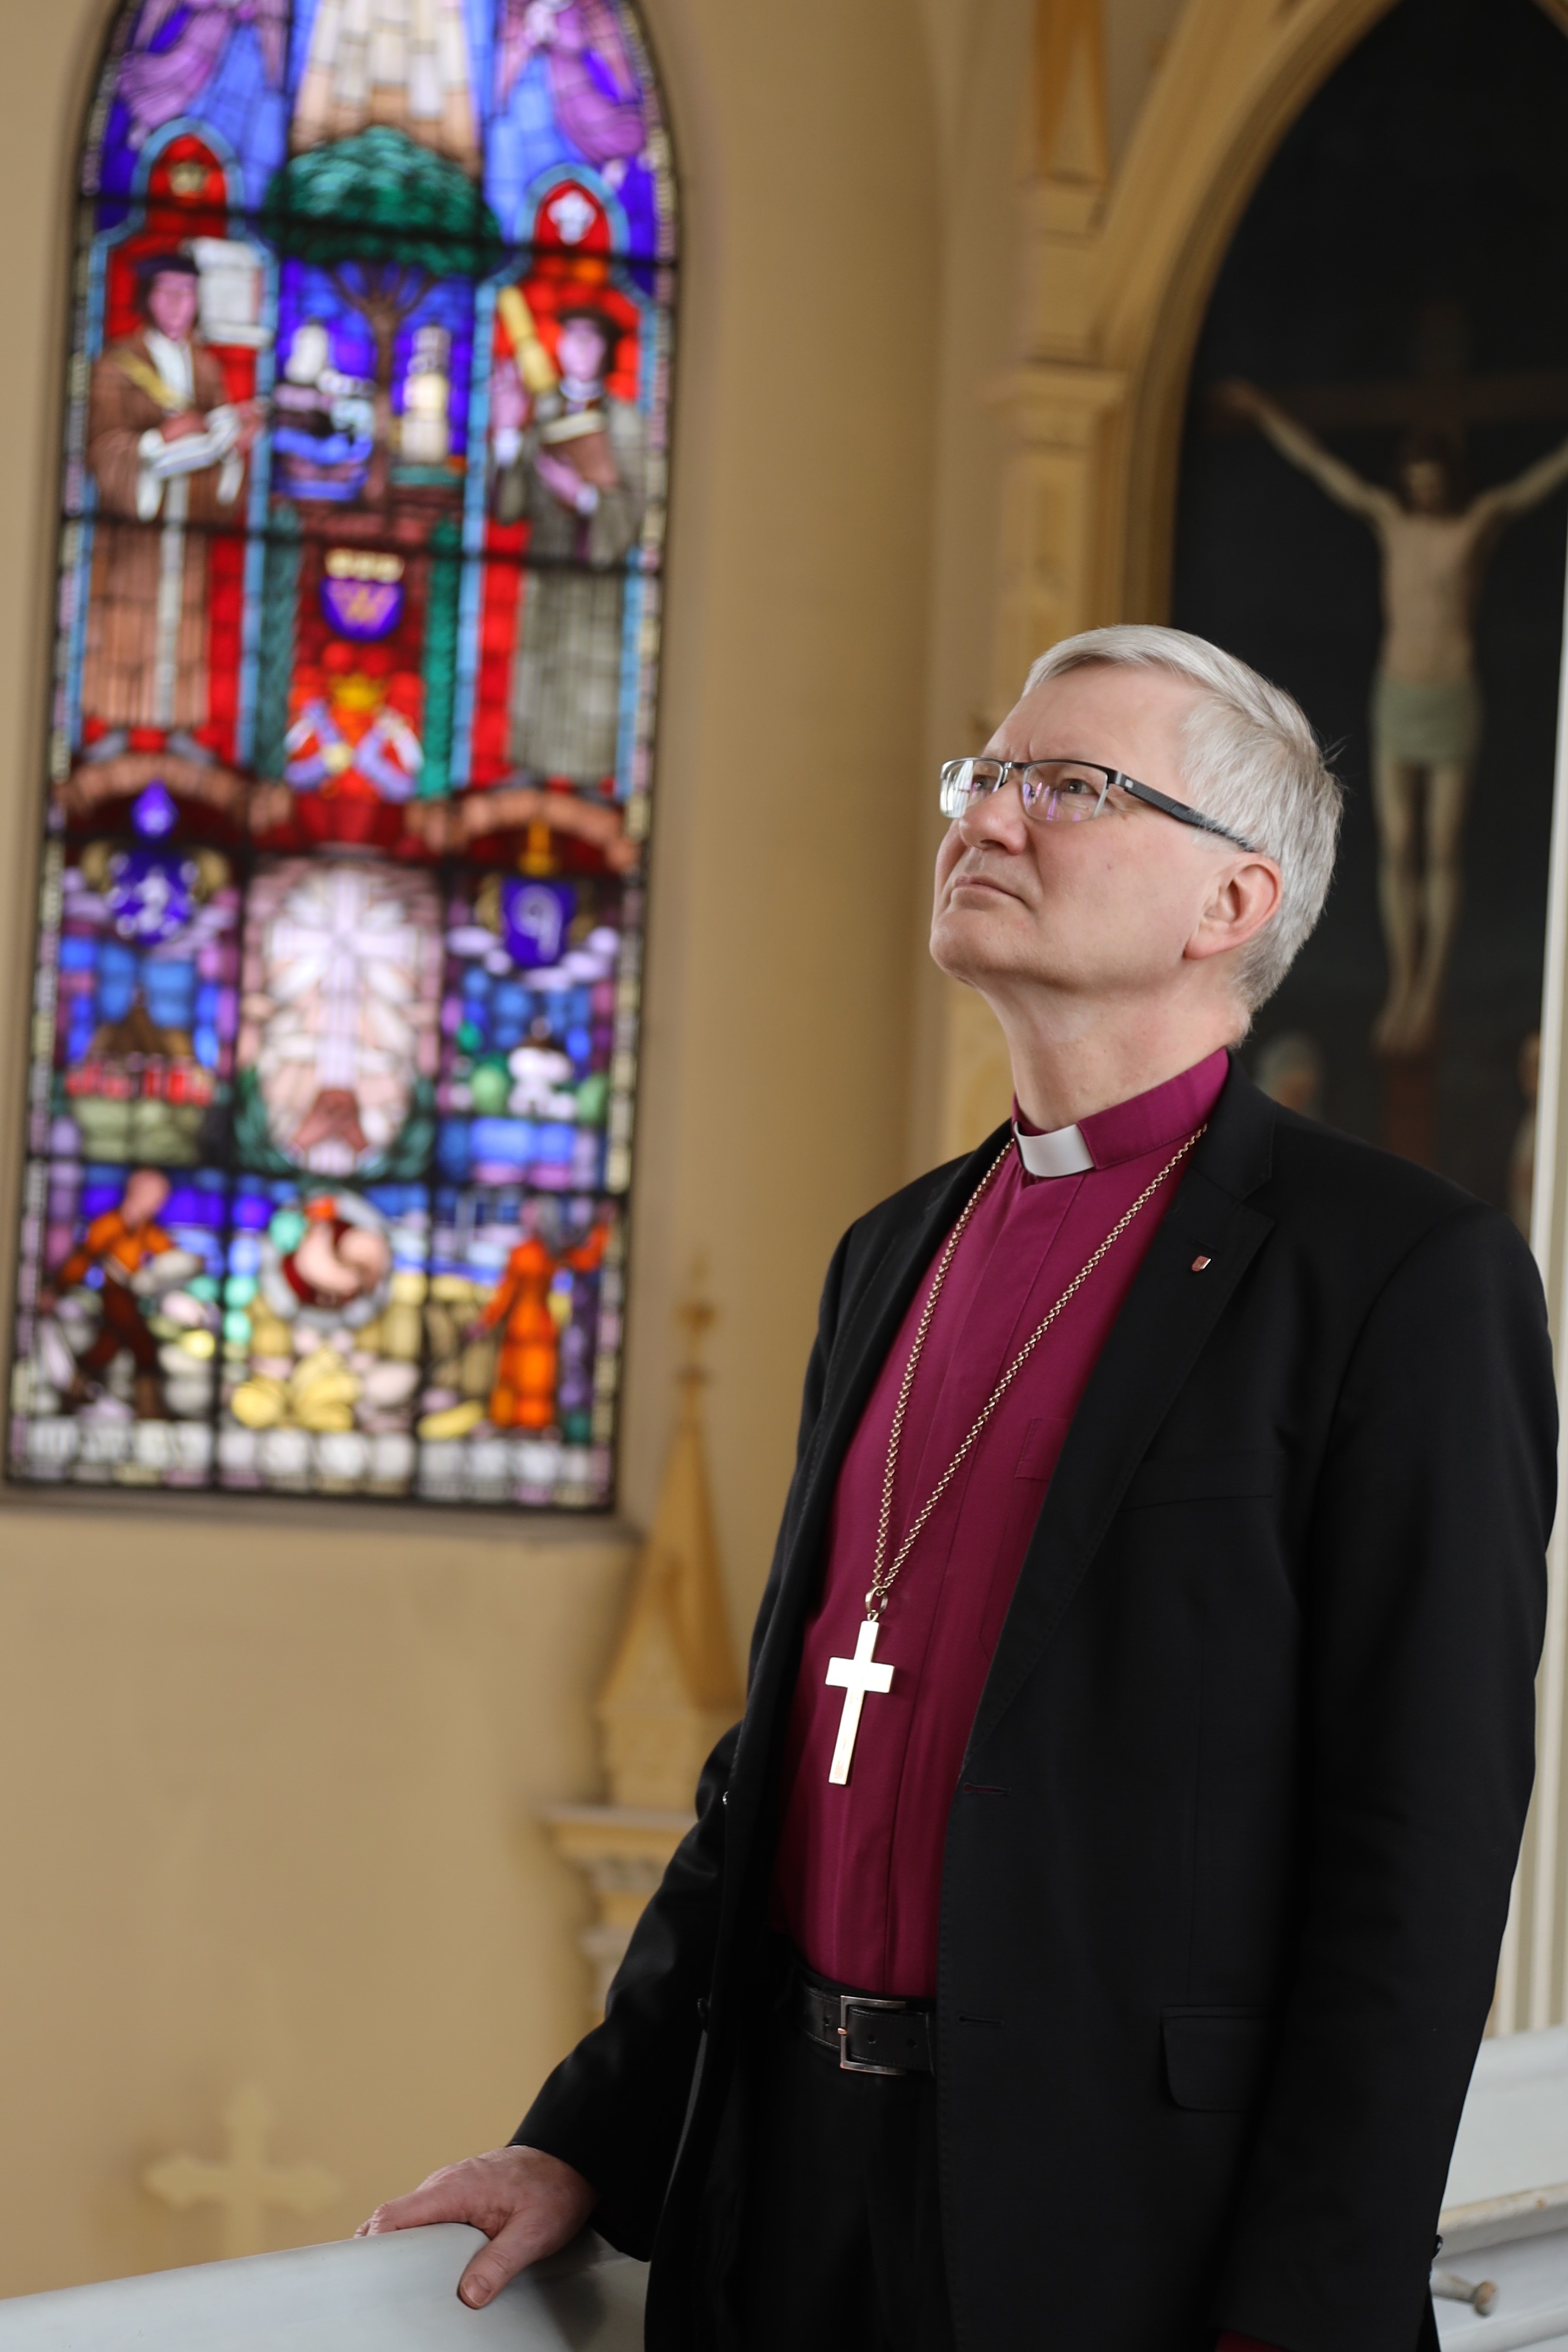 Piispa Seppo Häkkinen katsoo ylös valoon Mikkelin tuomiokirkon lehterillä. austalla näkyy 